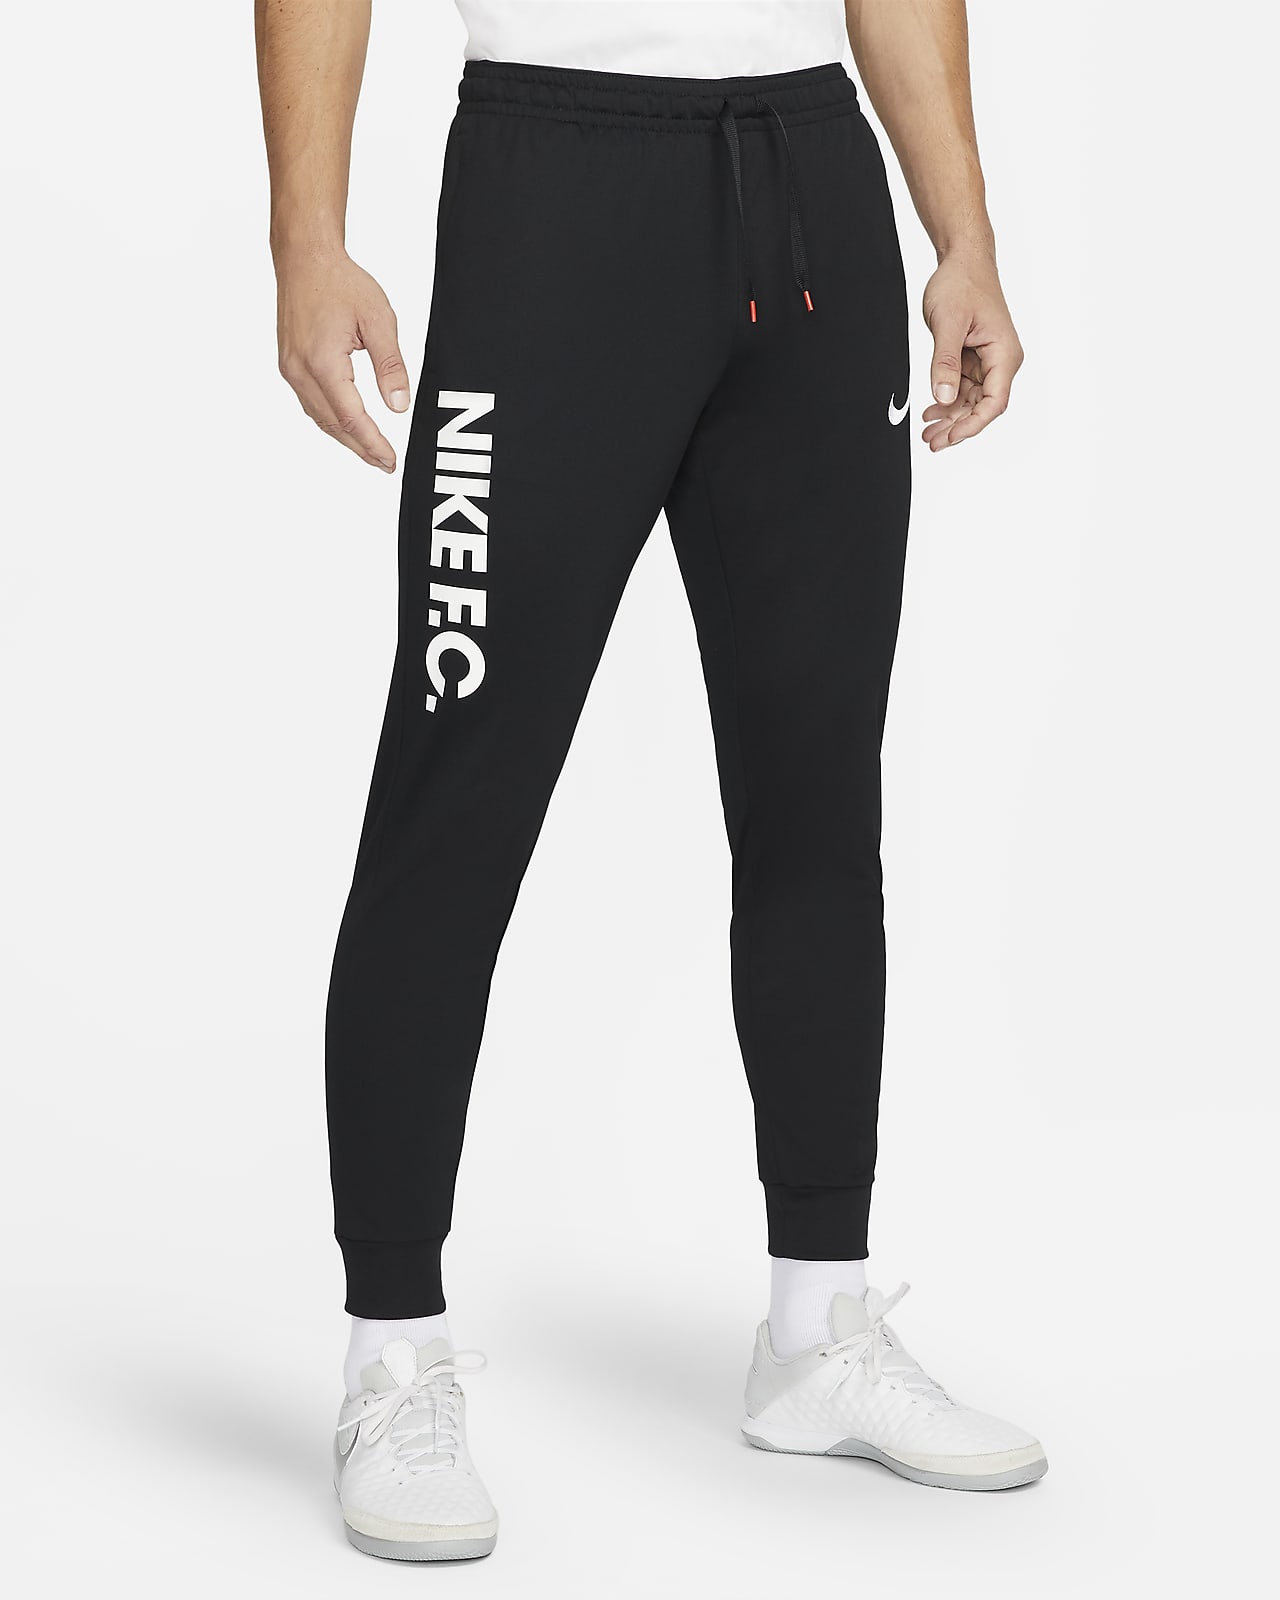 Simetría Interesar Fugaz Nike F.C. Dri-FIT Men's Knit Soccer Pants. Nike.com